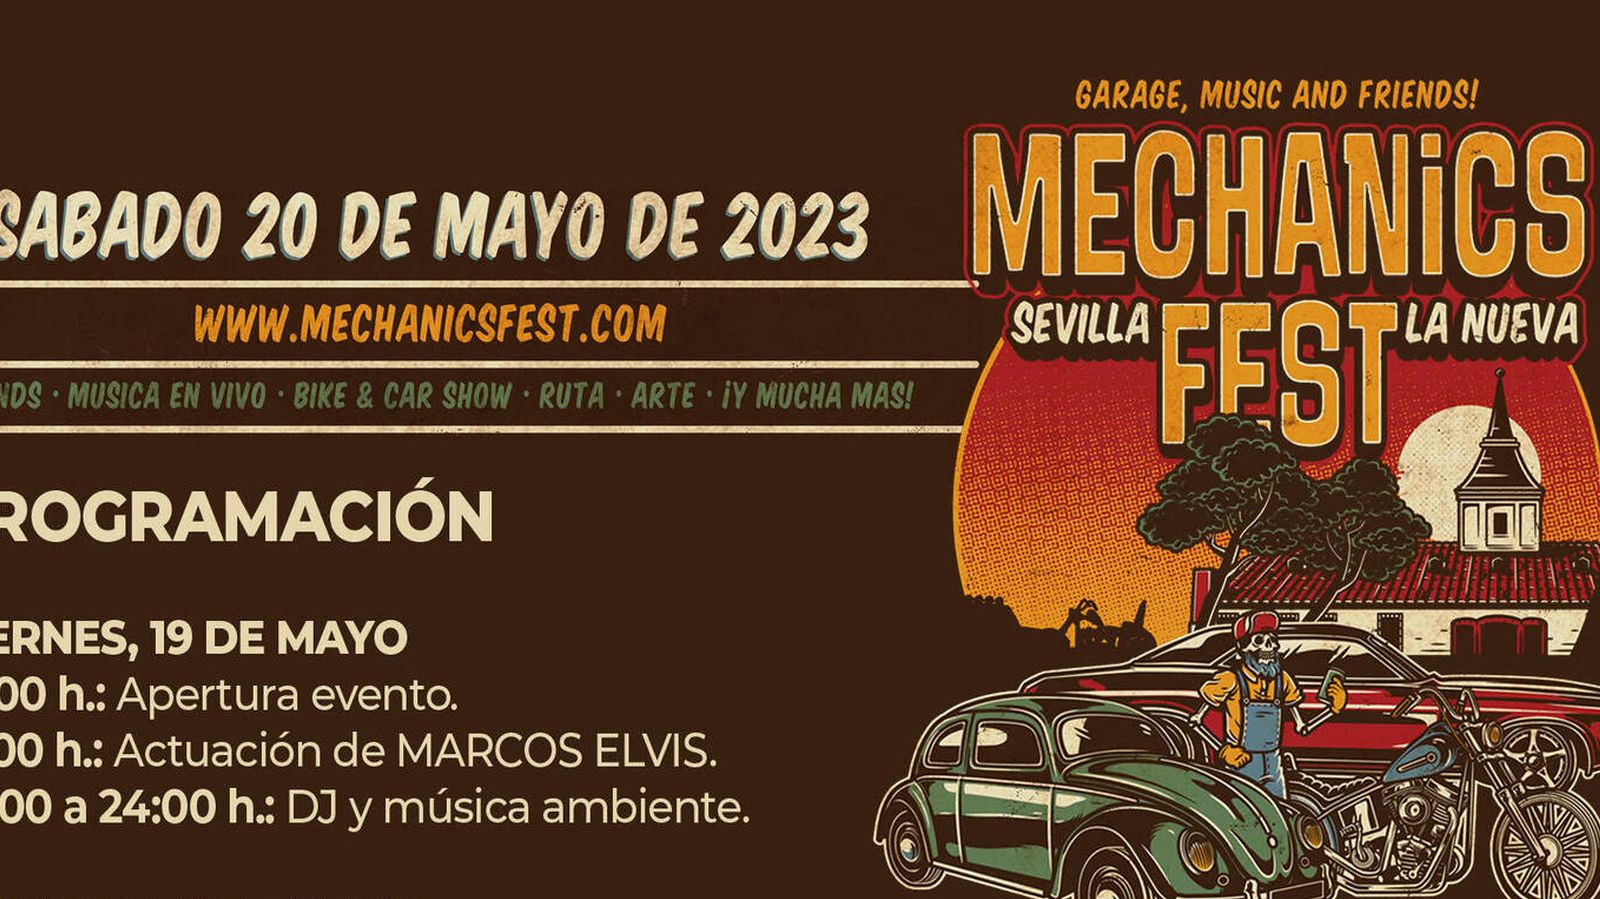 Mechanics Fest vuelve a Sevilla la Nueva con su VIII Edición